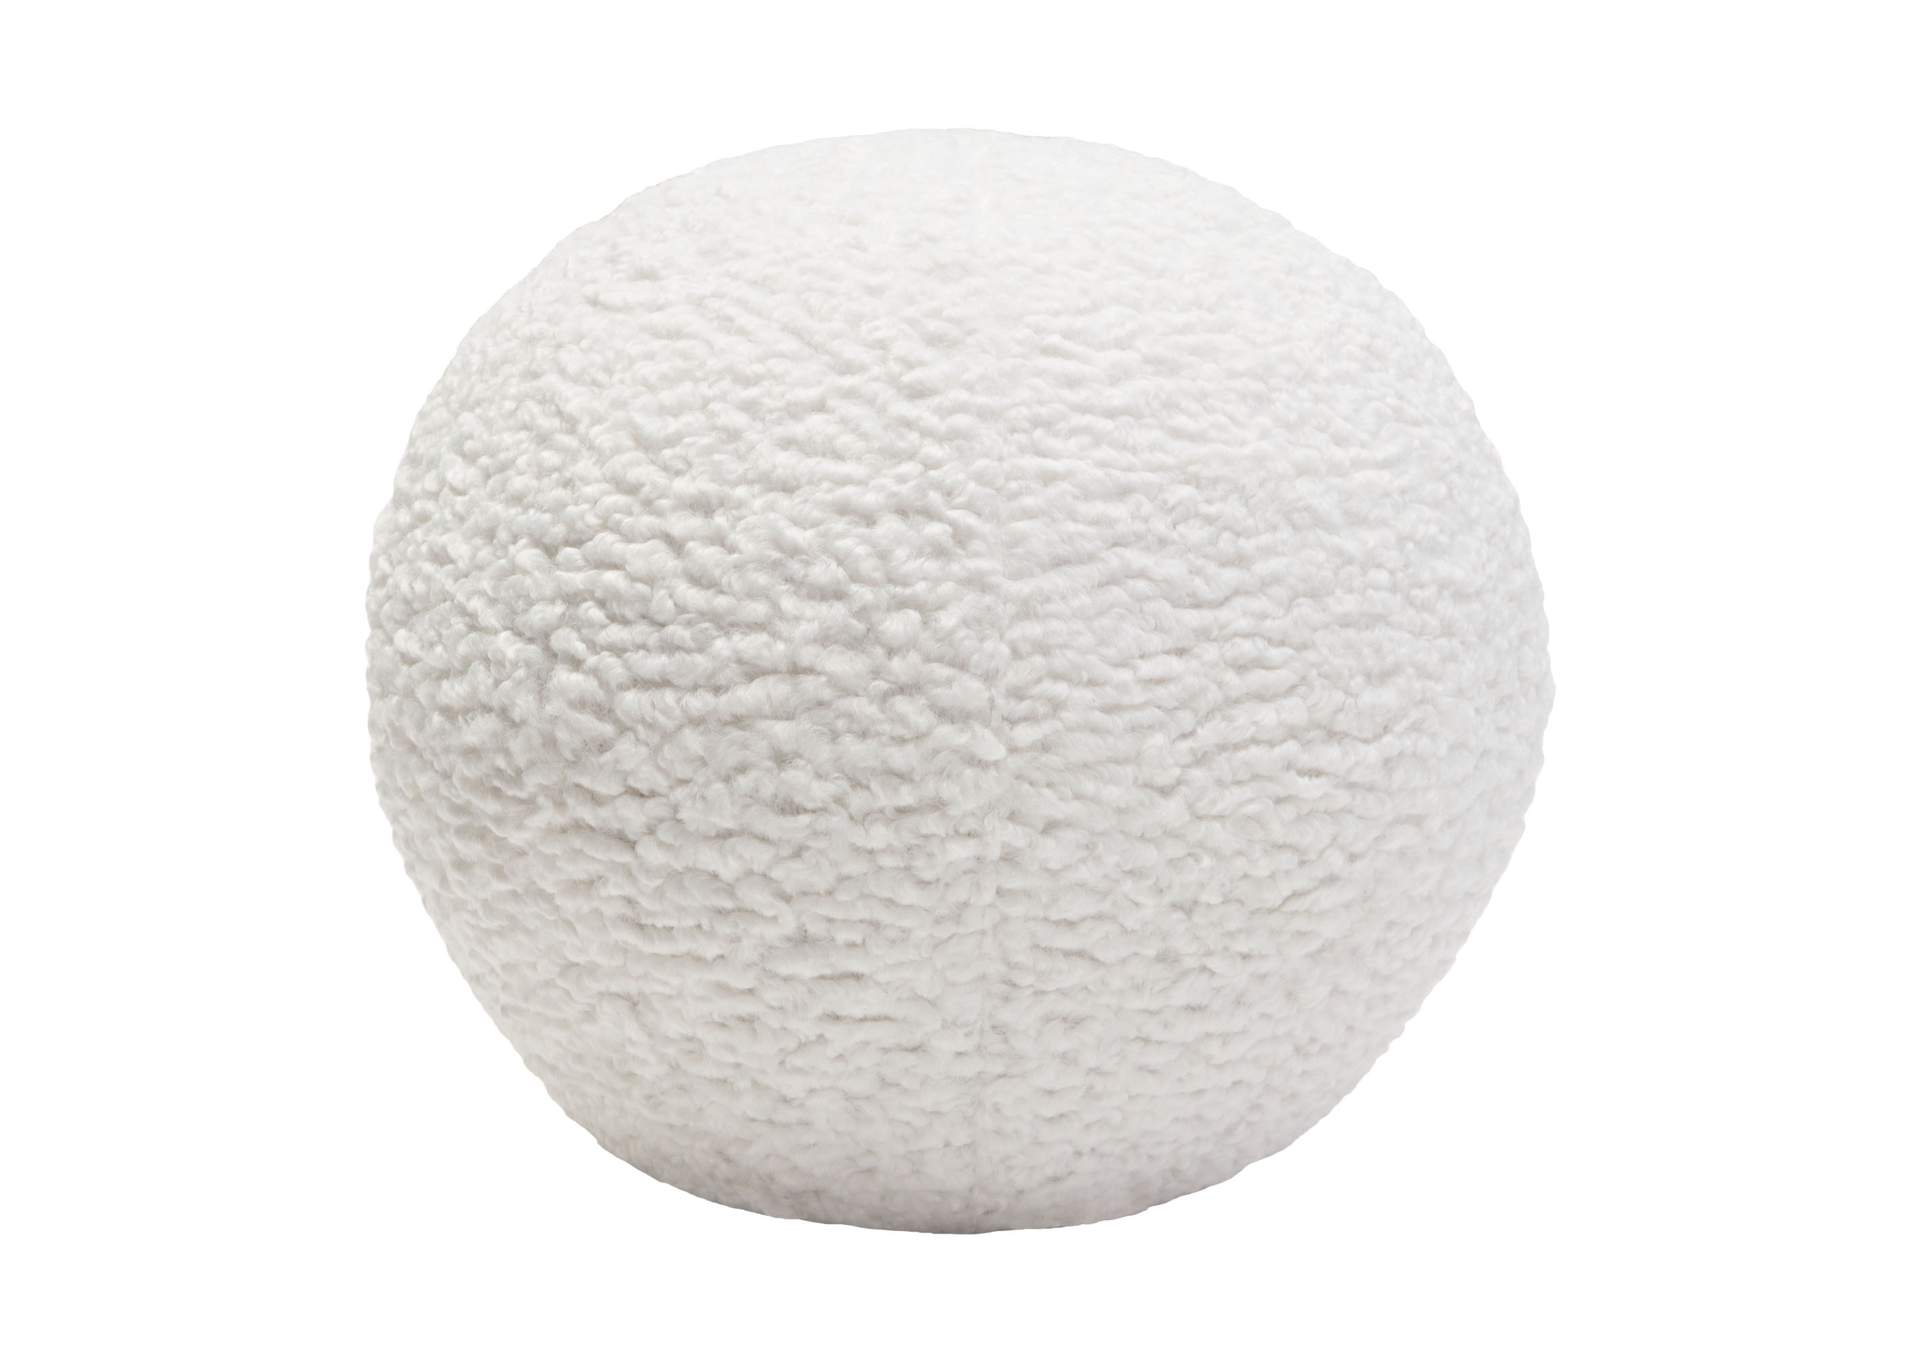 Set of (2) 10" Round Accent Pillows in White Faux Sheepskin by Diamond Sofa,Diamond Sofa